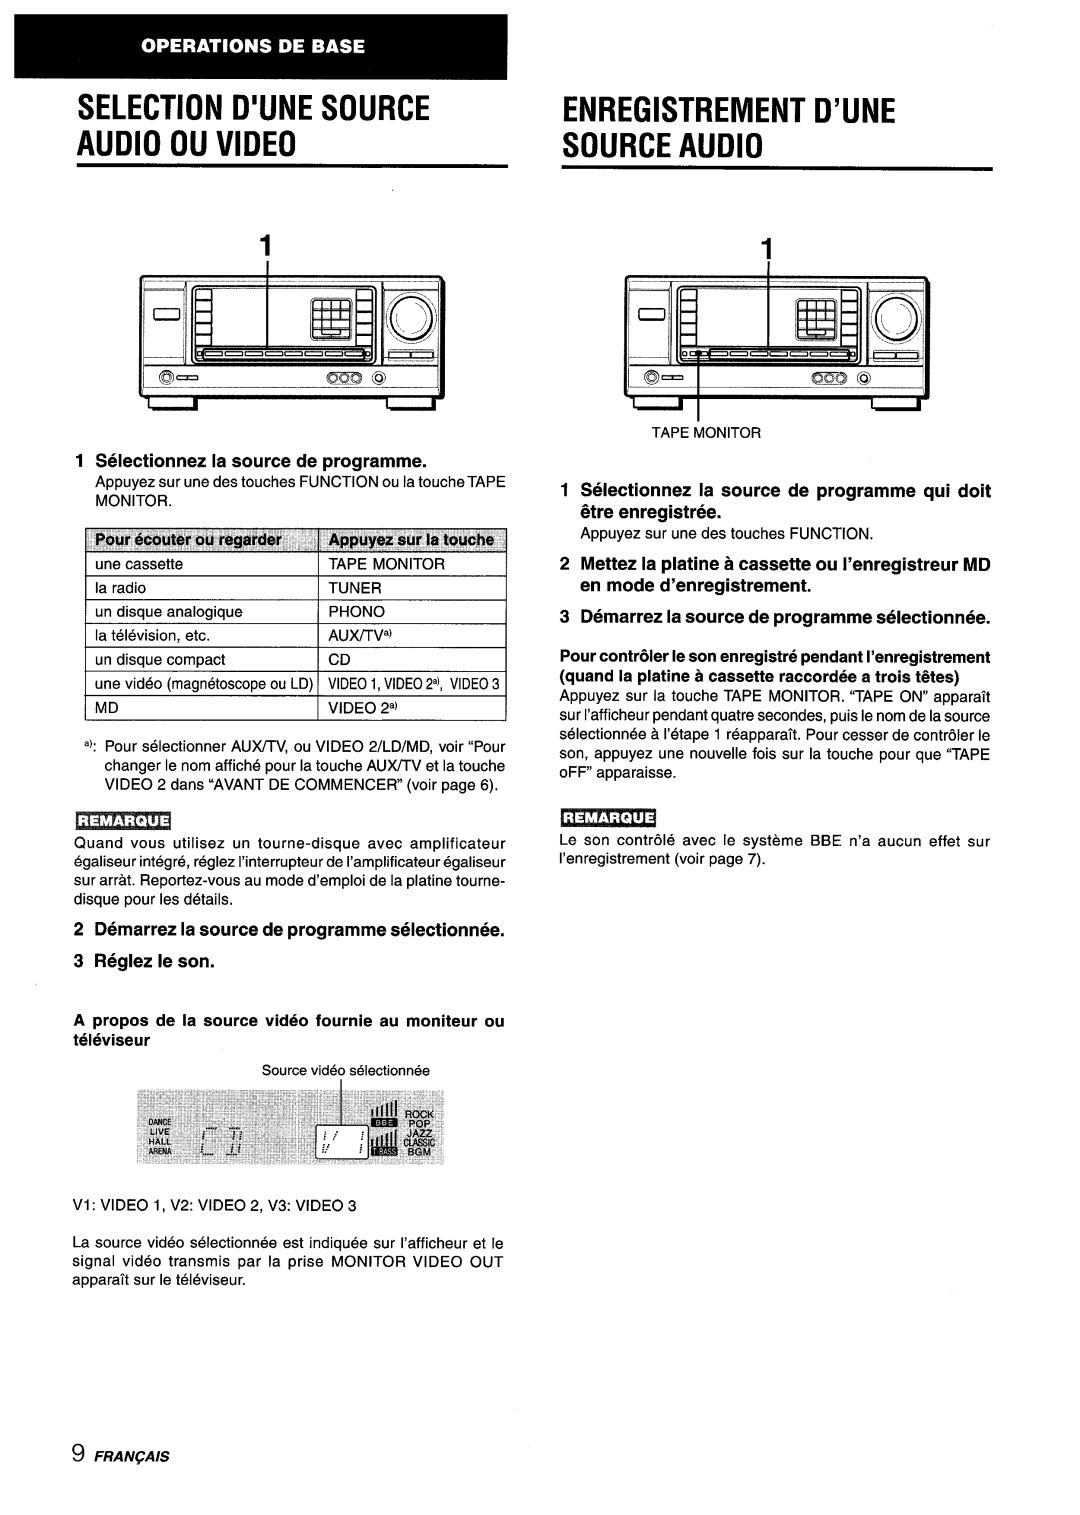 Aiwa AV-X220 manual Selection D’Une Source, Audio Ou Video, Source Audio, Enregistrement D’Une, IL4*O Oaonc 